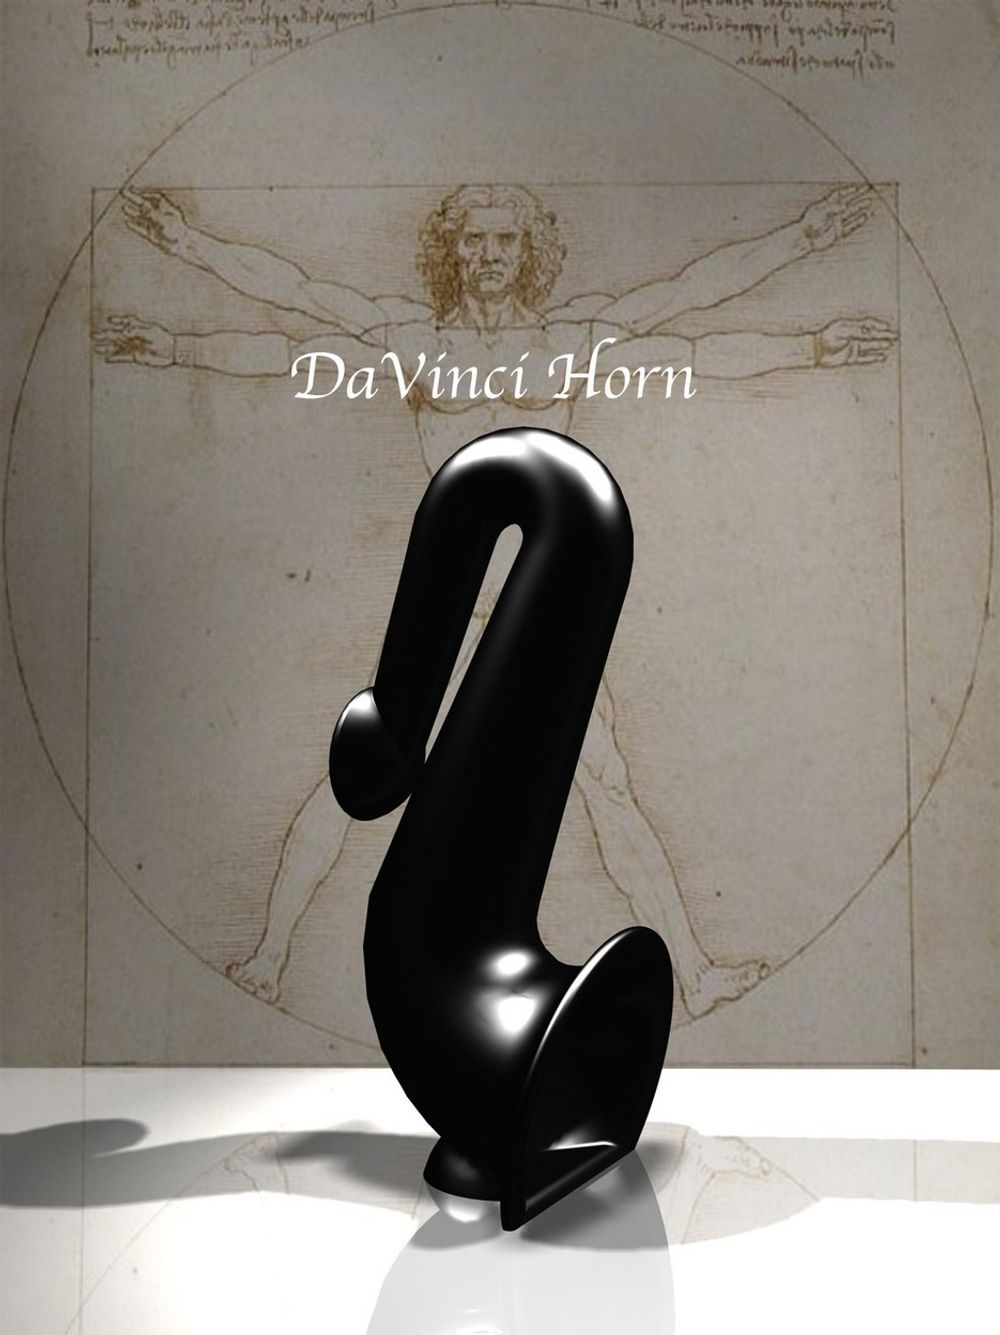 Dette litt spesielle hornet med navnet The DaVinci Horn, er en spesiell høyttaler på bare 1 Watt, men med en kvalitet og gjengivelse som får kjennerne til å lytte i andektighet. Utviklet av Hi-Fi Research Ltd.